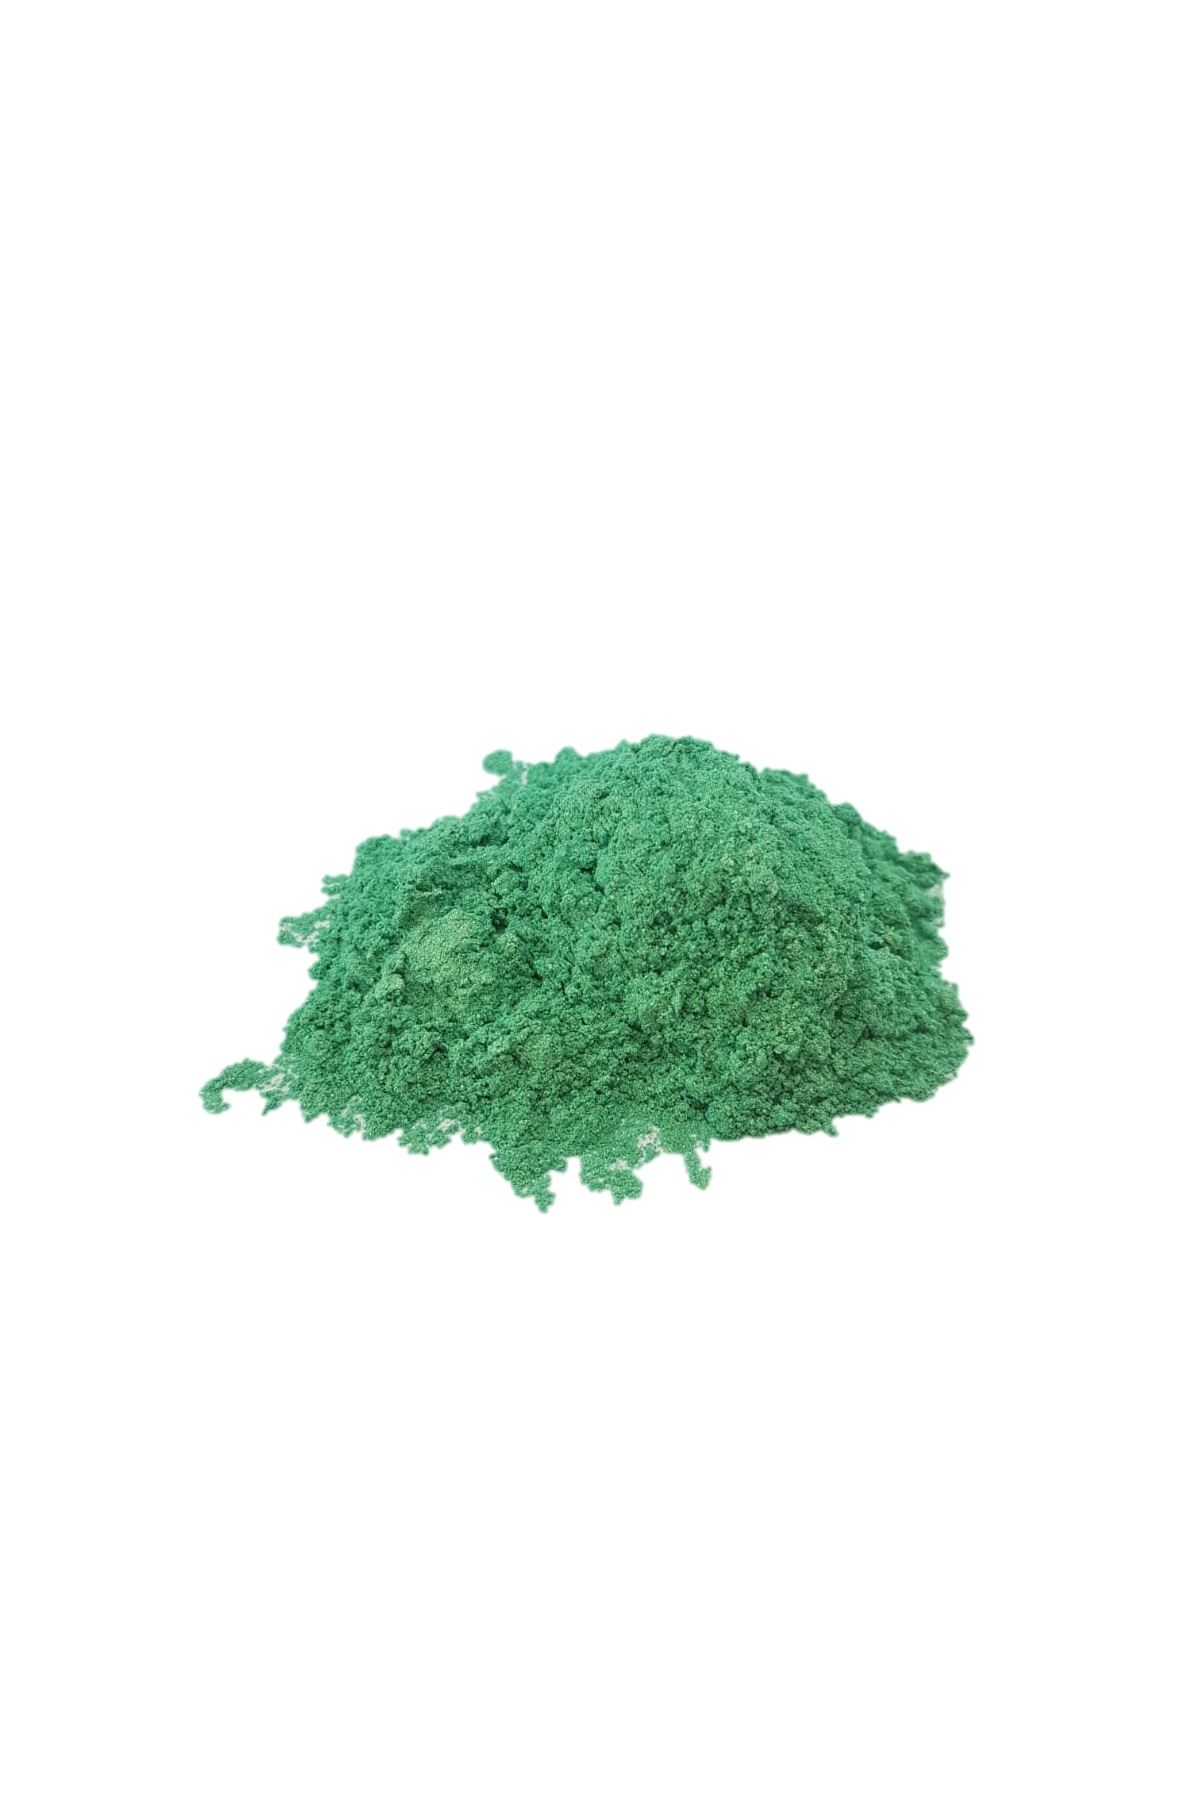 Brtr 4 Renk Yeşil 10gr x 4 Sedefli Epoksi Metalik Toz Pigment Seti